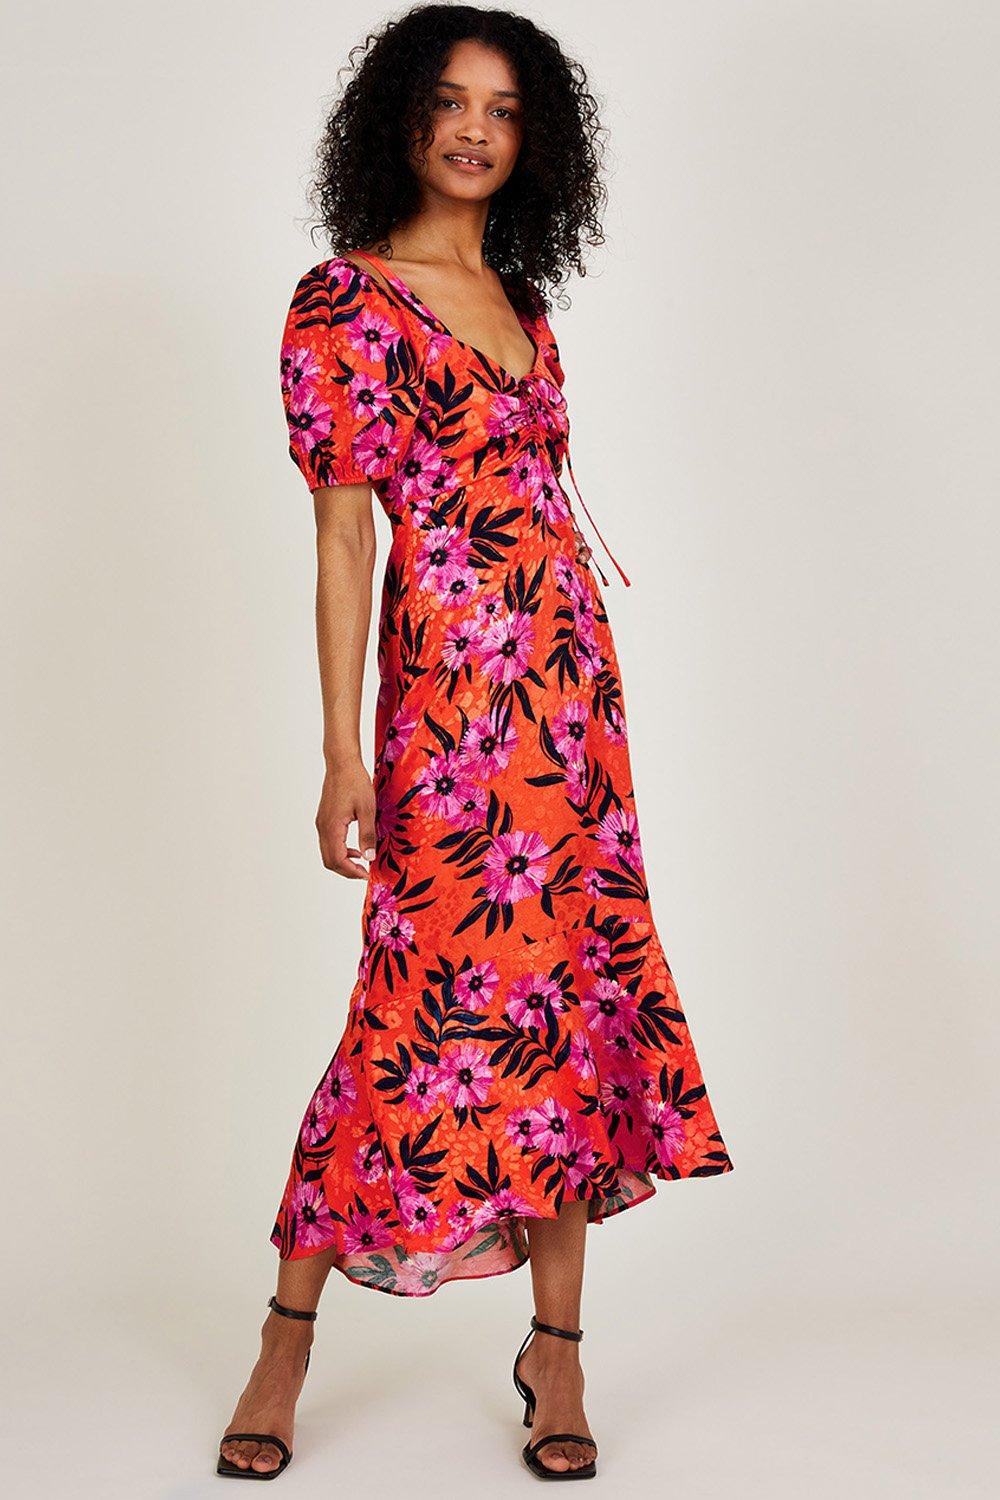 'Kerry' Satin Jacquard Floral Print Dress